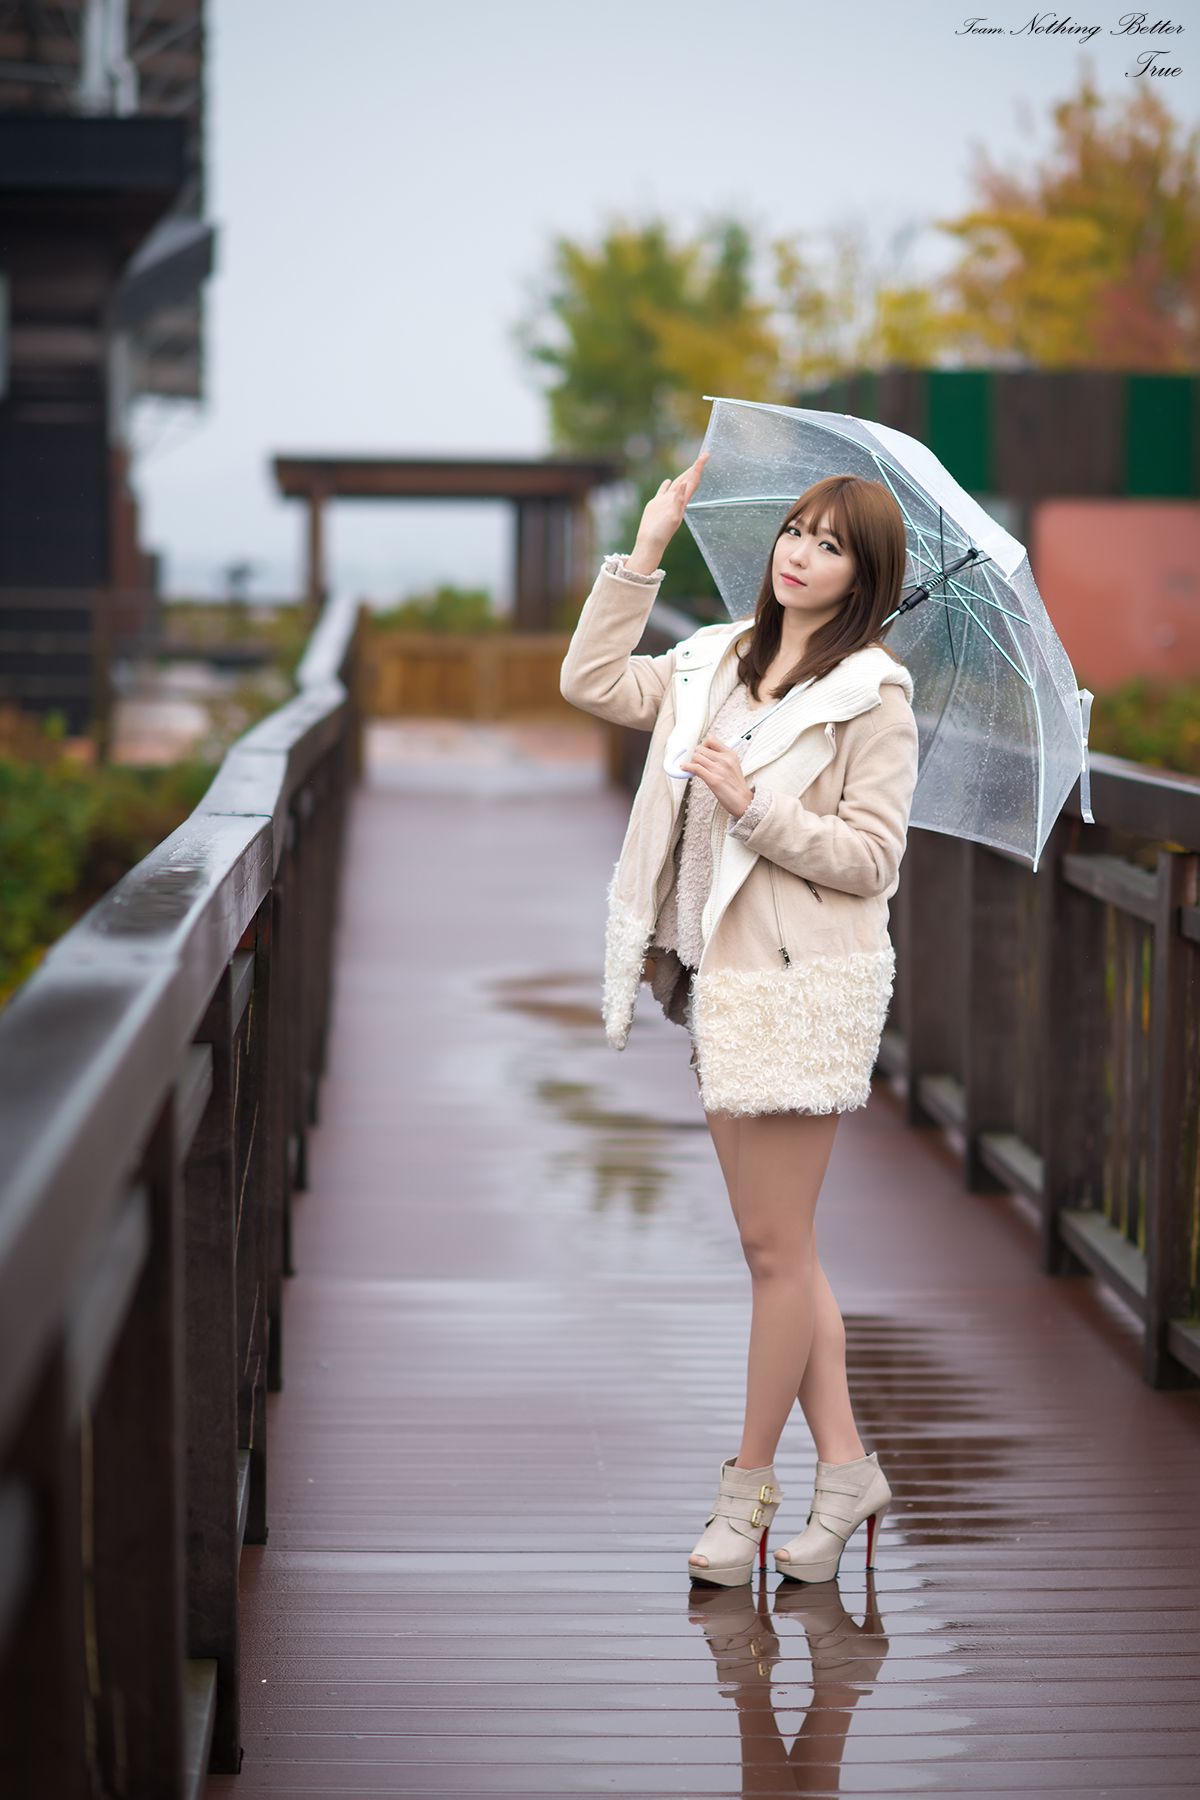 极品韩国美女李恩慧《下雨天街拍》  第35张